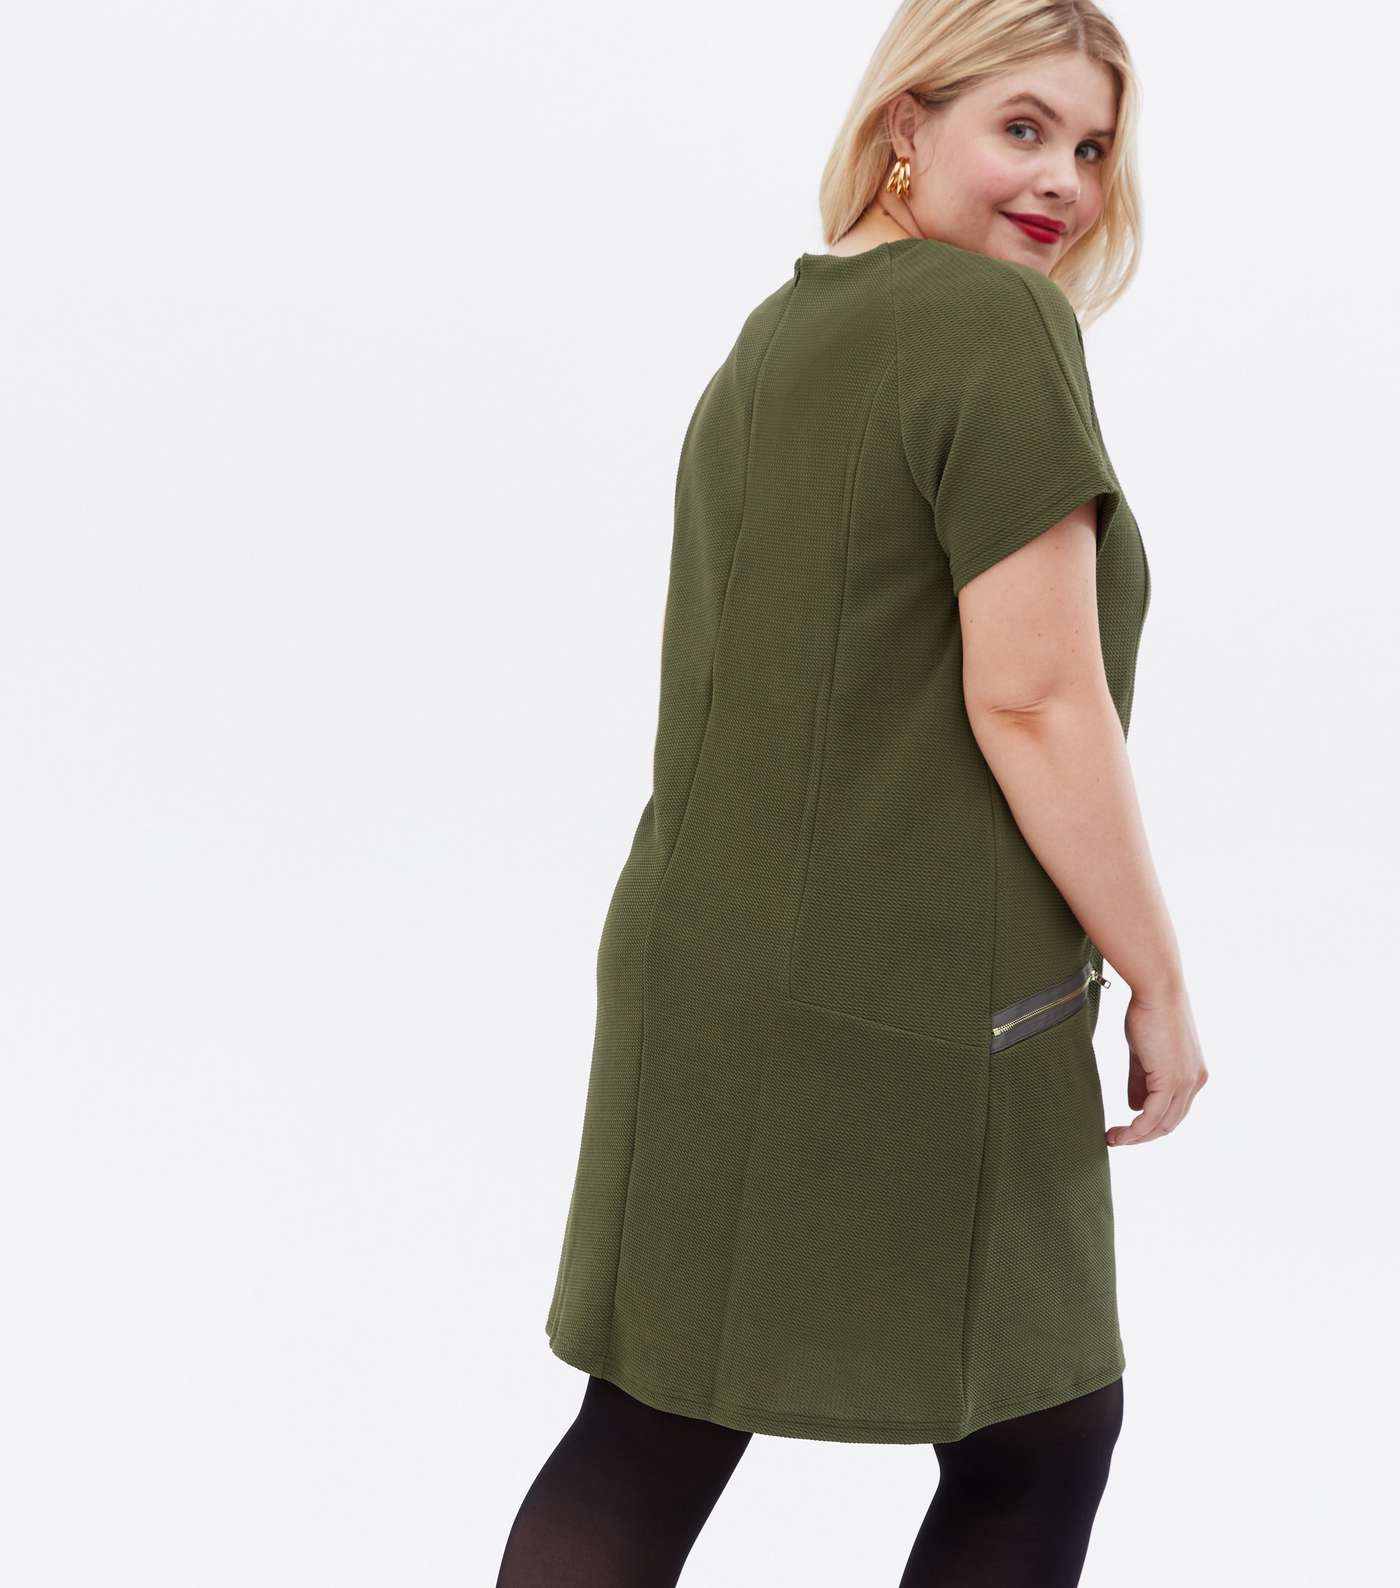 Mela Curves Olive Textured Zip Shift Dress Image 4